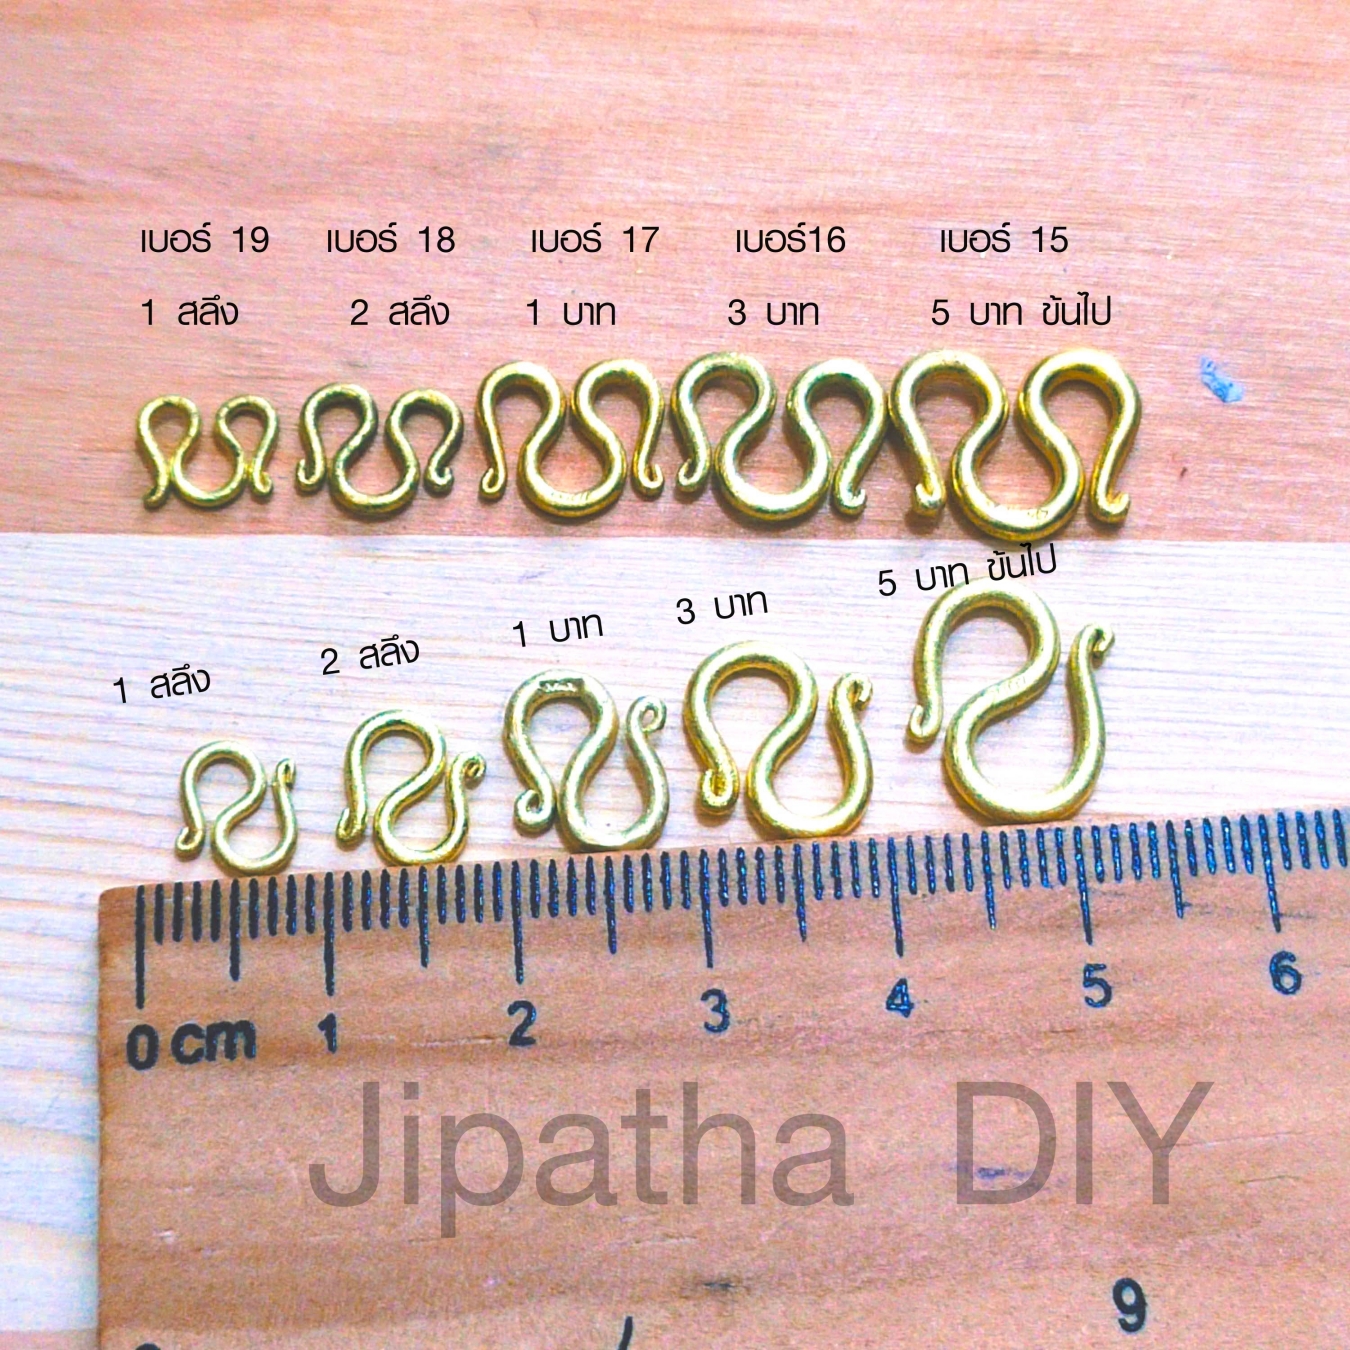 Jipatha DIY 2x ตะขอส้อยข้อมือ ตะขอสร้อยคอ ตะขอโบราณ ชุด 2 ตัว ตะขอก้ามปู ตะขอตัวM ตะขอตัวN ตะขอทอง ตะขอทองเหลืองแท้ ตะขอไม่ลอก